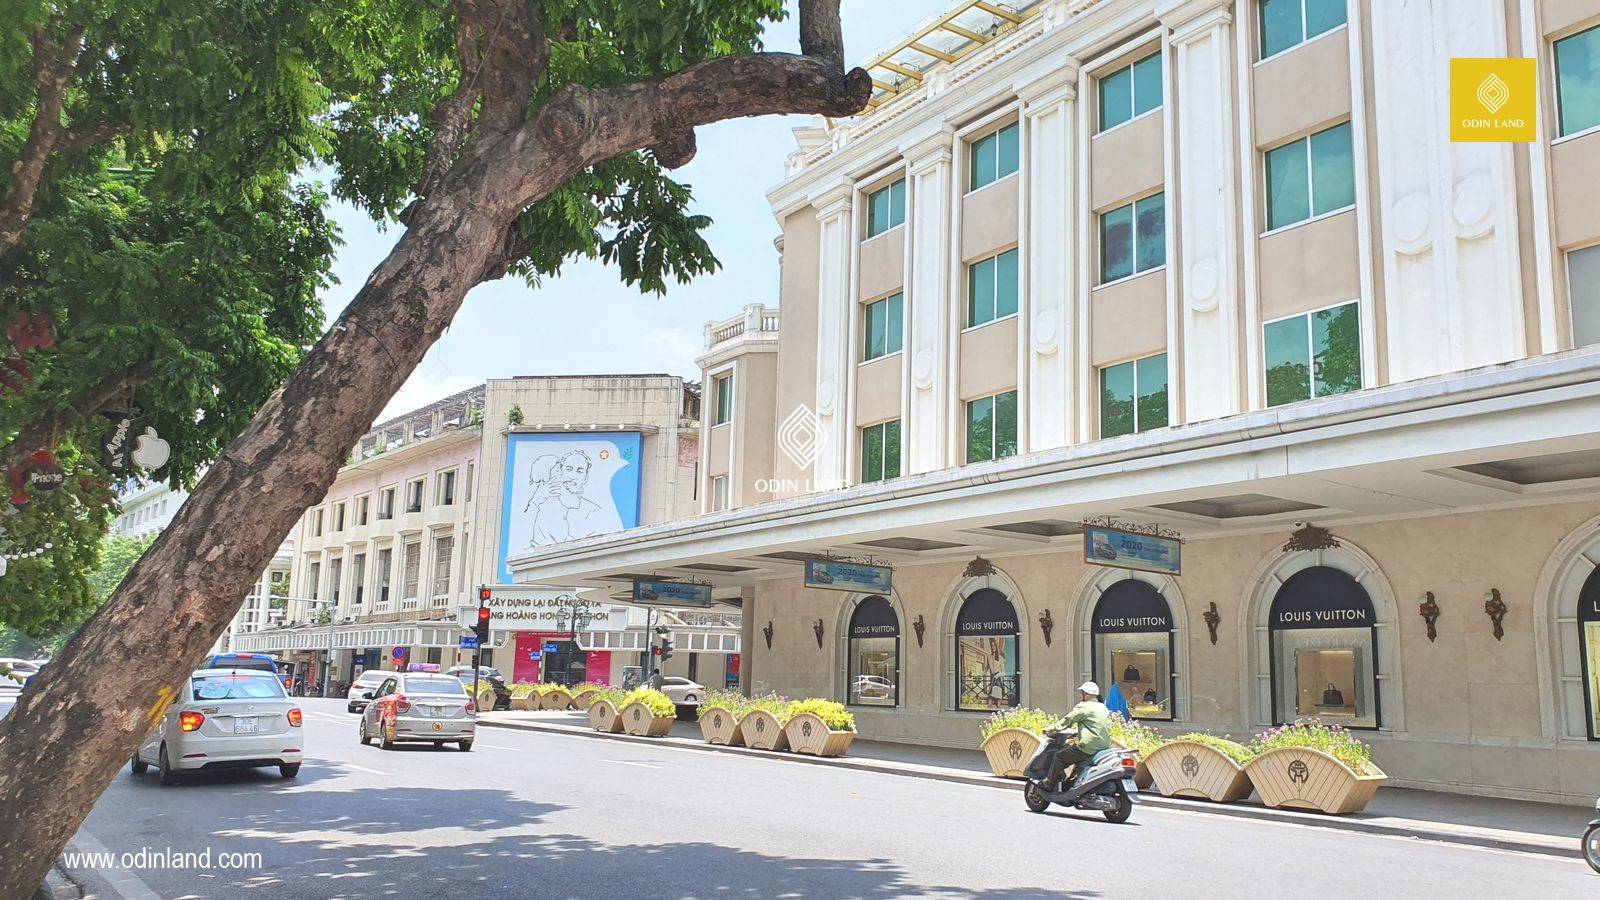 Louis Vuitton khai trương cửa hàng lớn nhất Việt Nam tại Hà Nội  Tạp chí  Đẹp